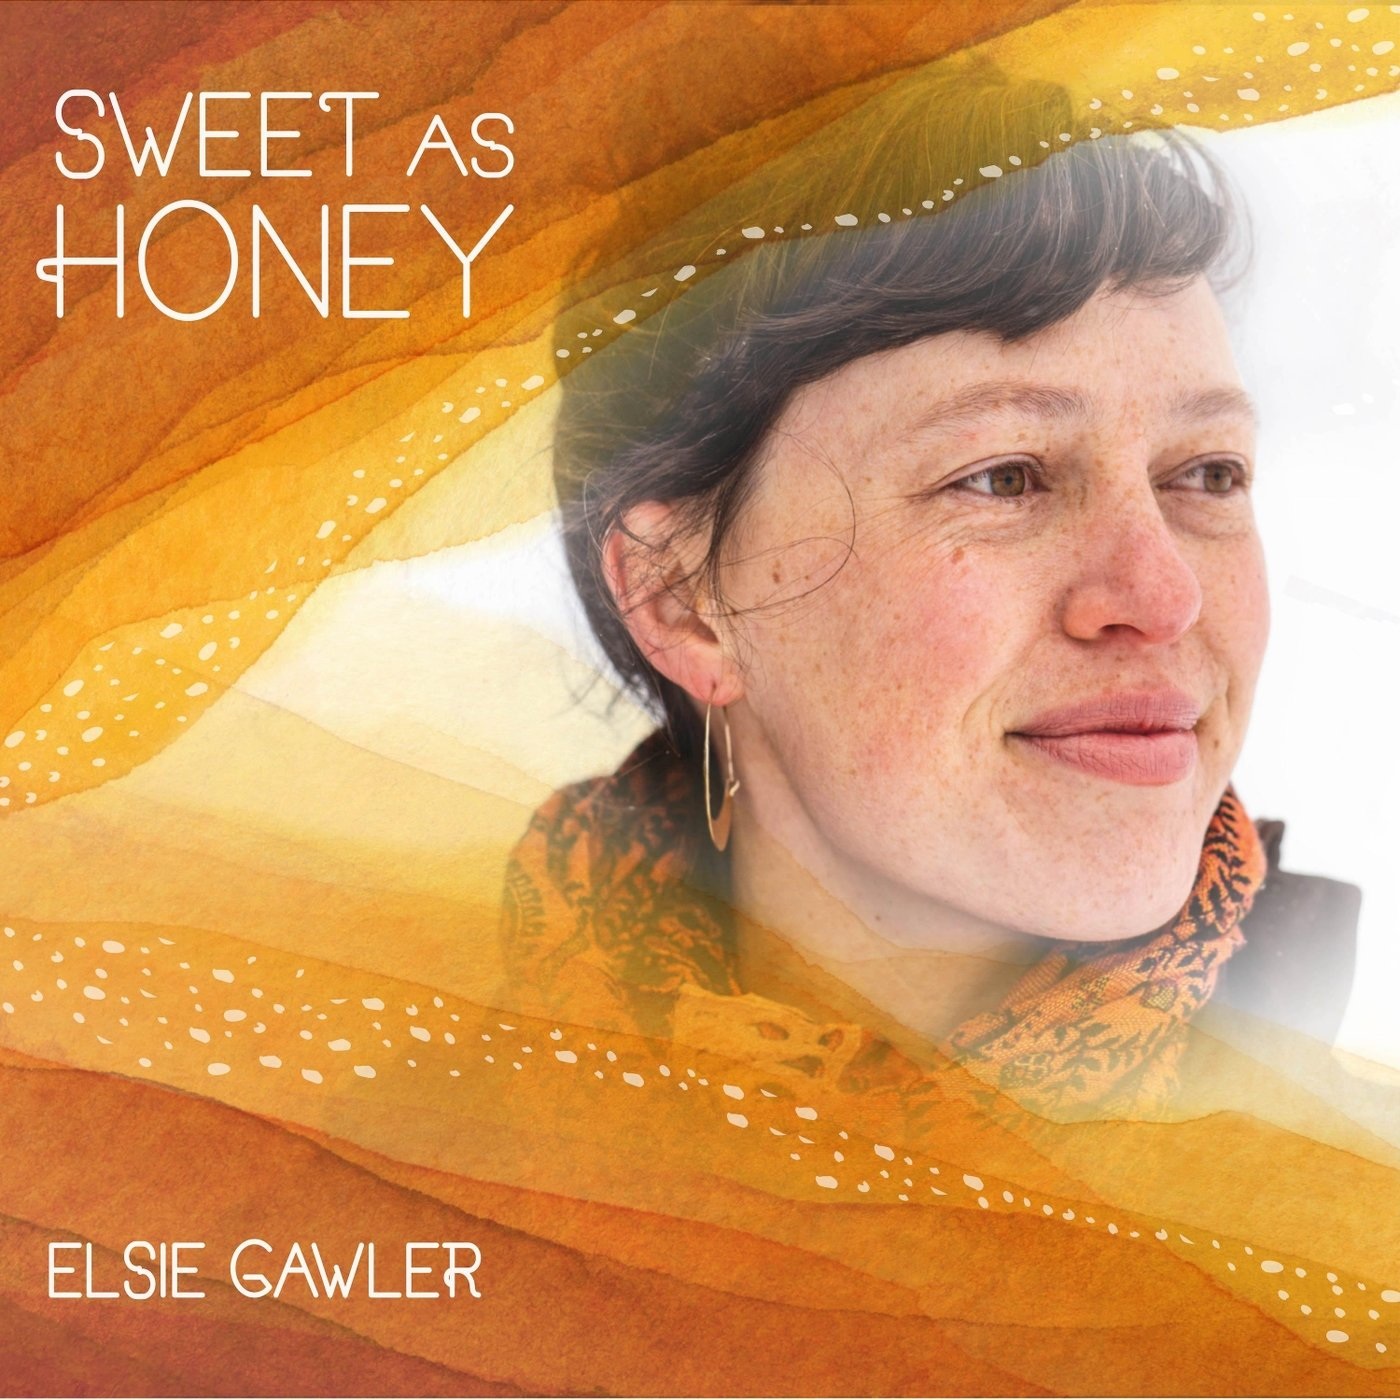 Elsie Gawler - 2021 - Sweet as Honey